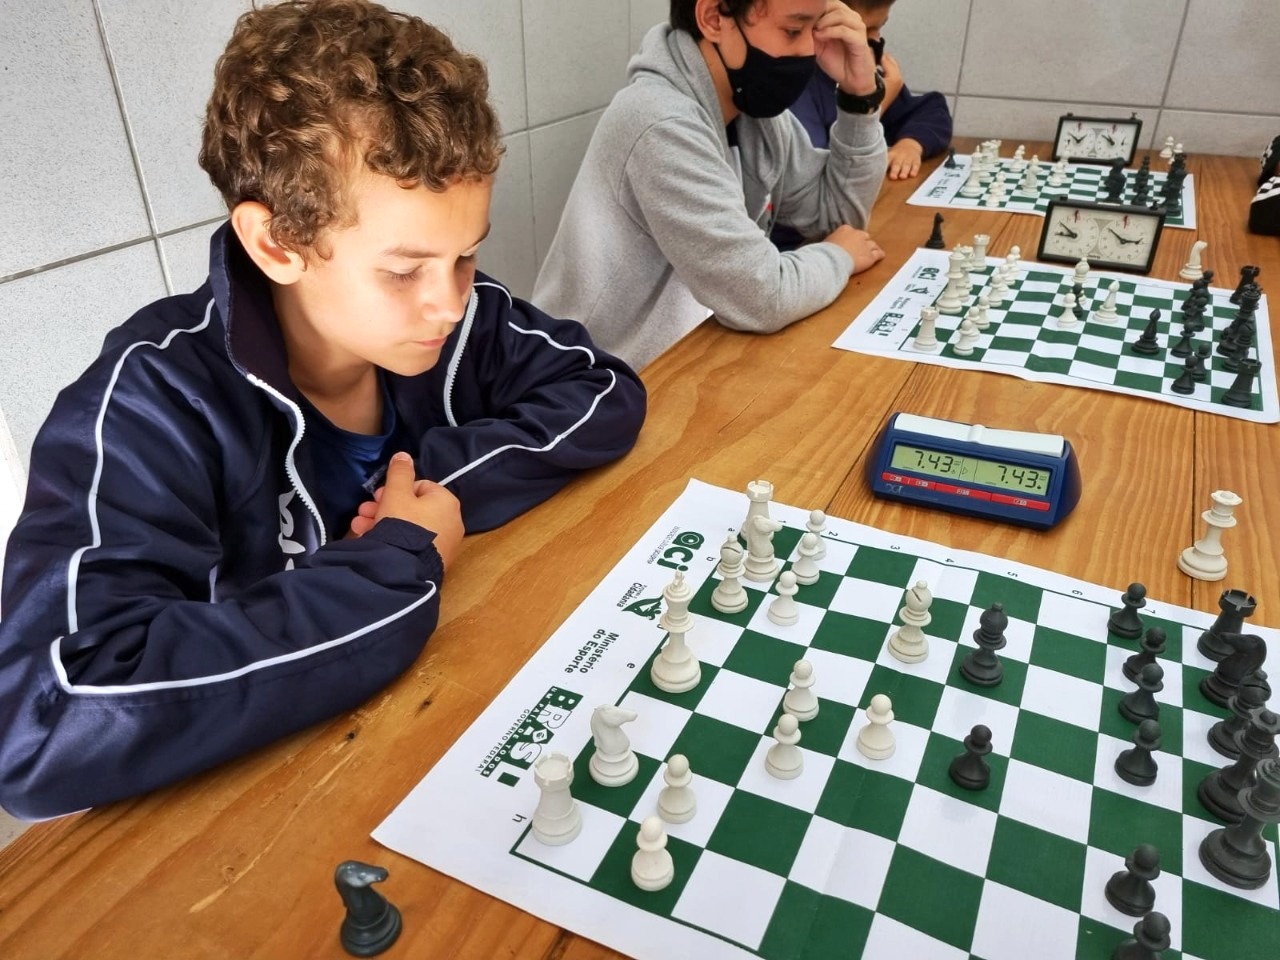 Jogar xadrez pode ajudar no desenvolvimento do cérebro - Portal Timbó Net